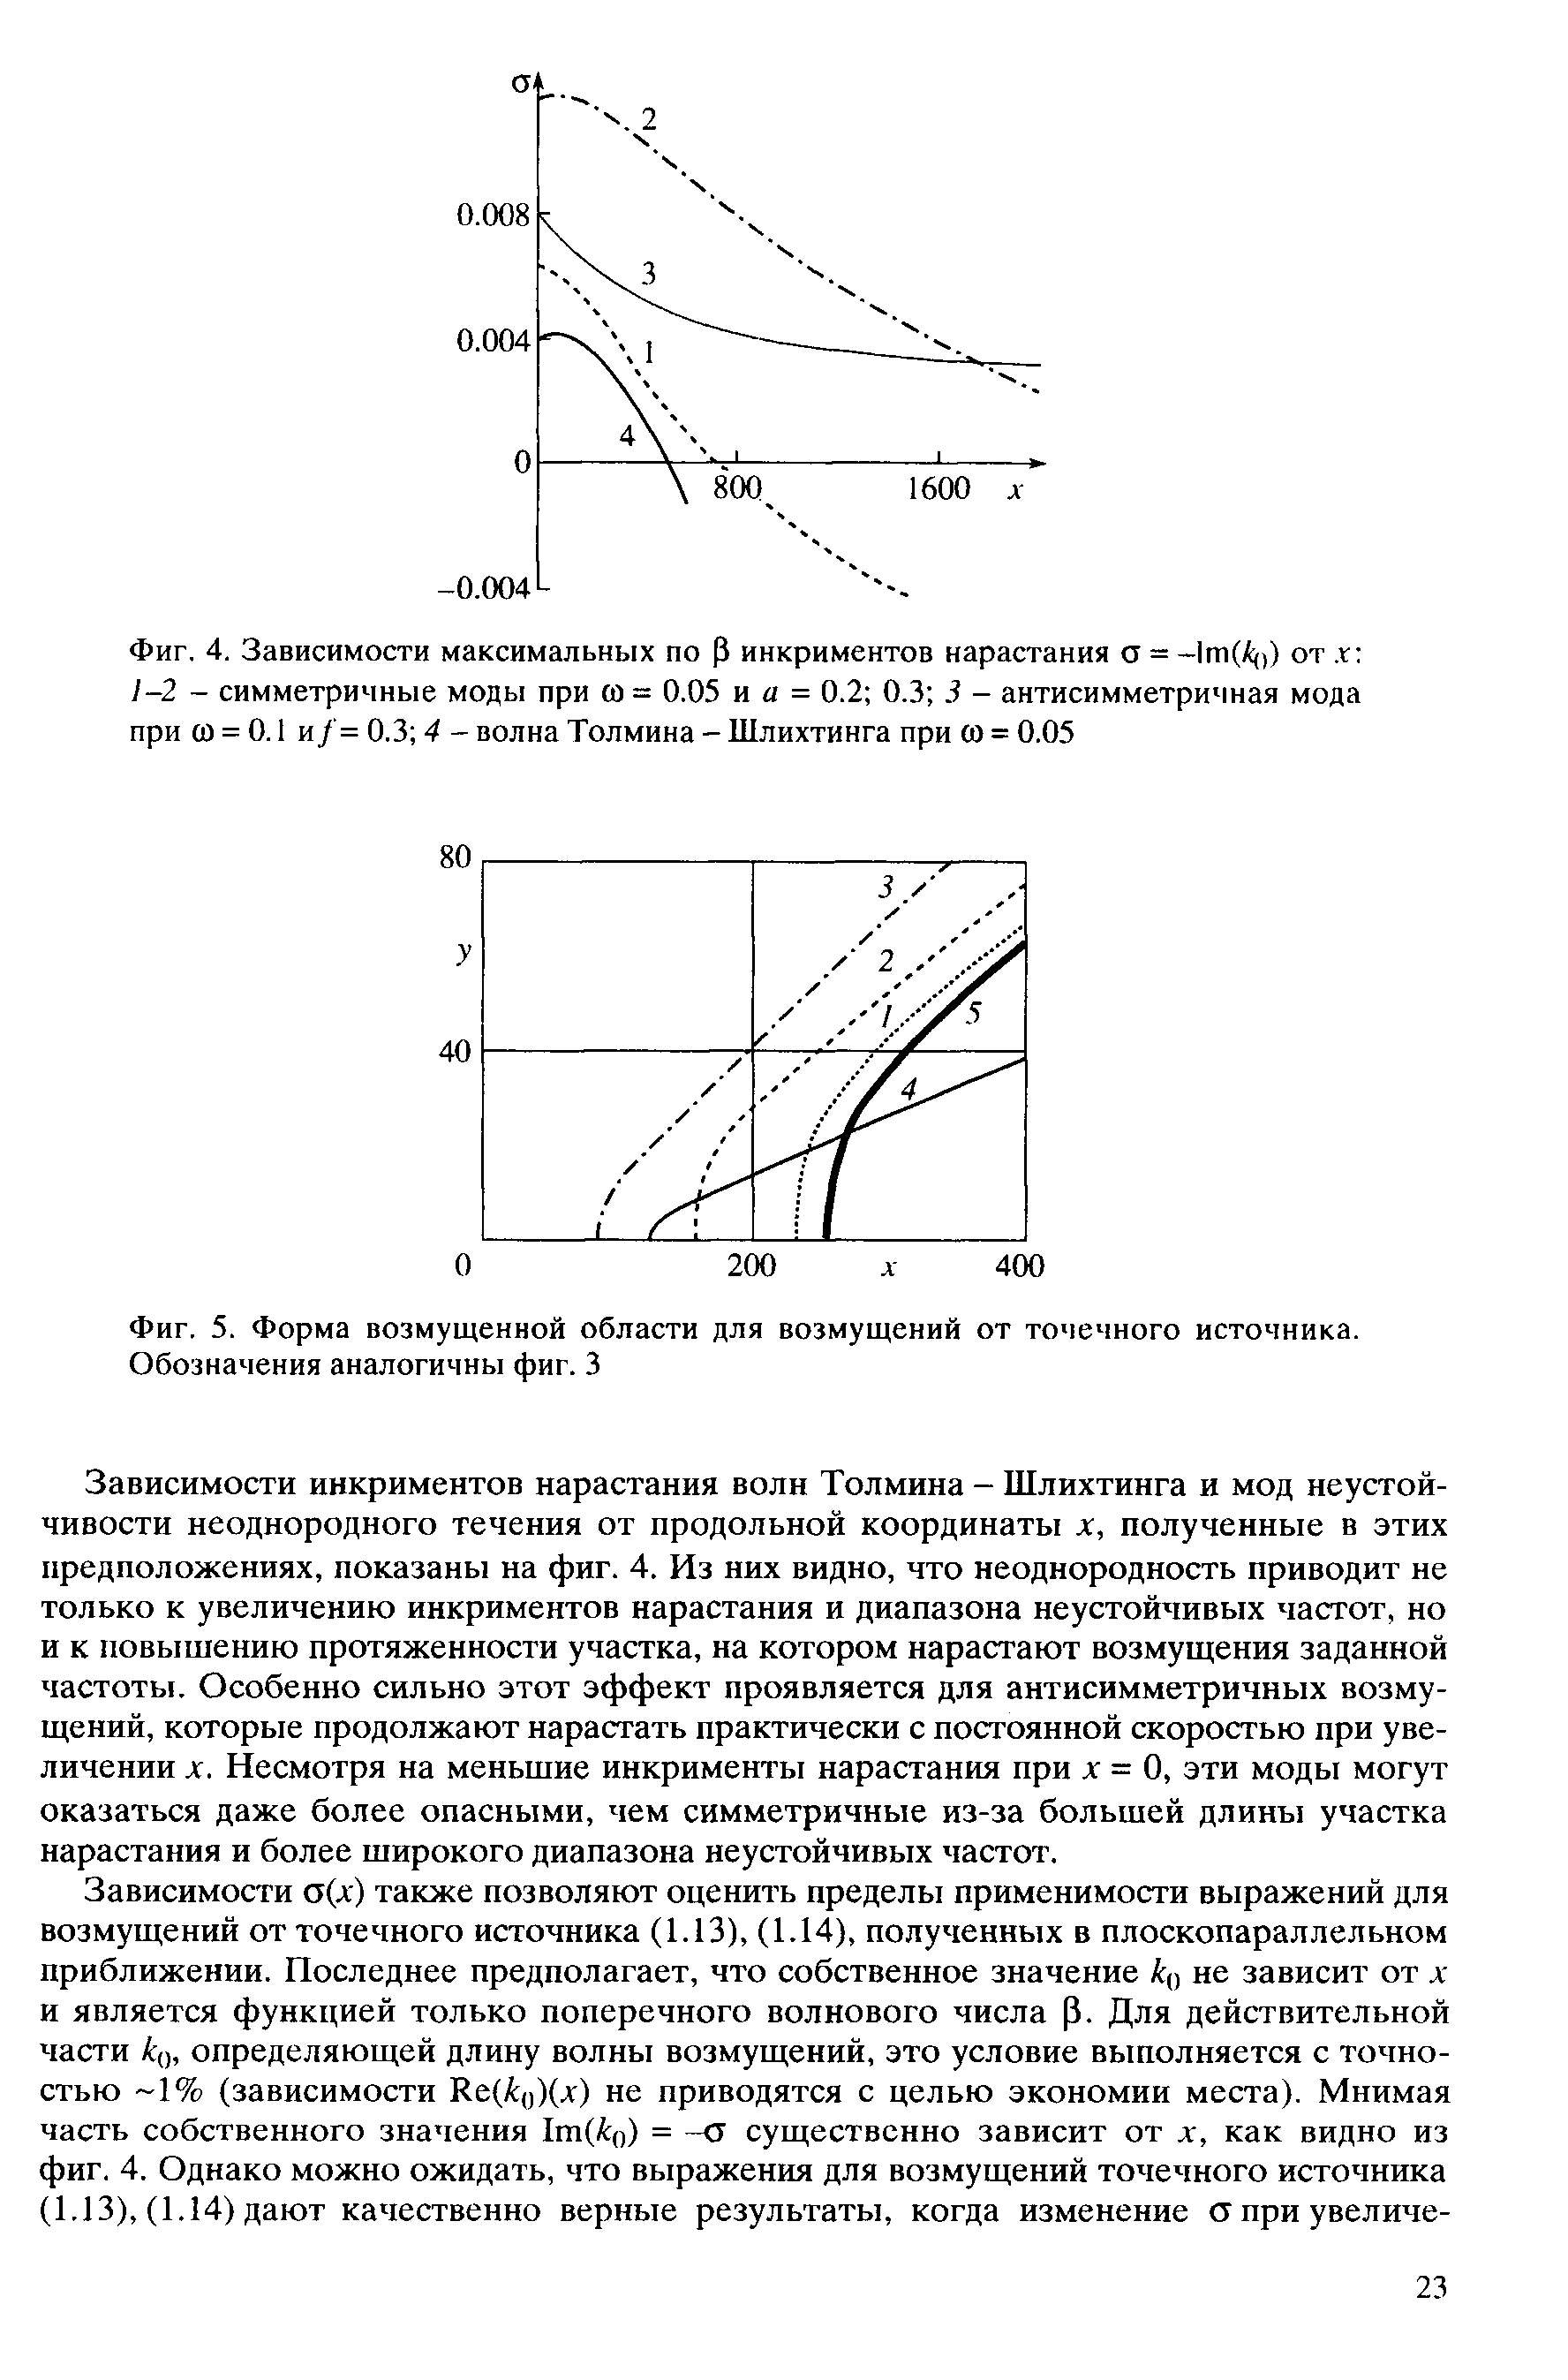 Фиг. 4. Зависимости максимальных по Р инкриментов нарастания а = -1т(А()) от, г -2 - симметричные моды при со = 0.05 и а = 0.2 0.3 3 - антисимметричная мода при со = 0.1 и/= 0.3 4 - волна Толмина - Шлихтинга при со = 0.05
